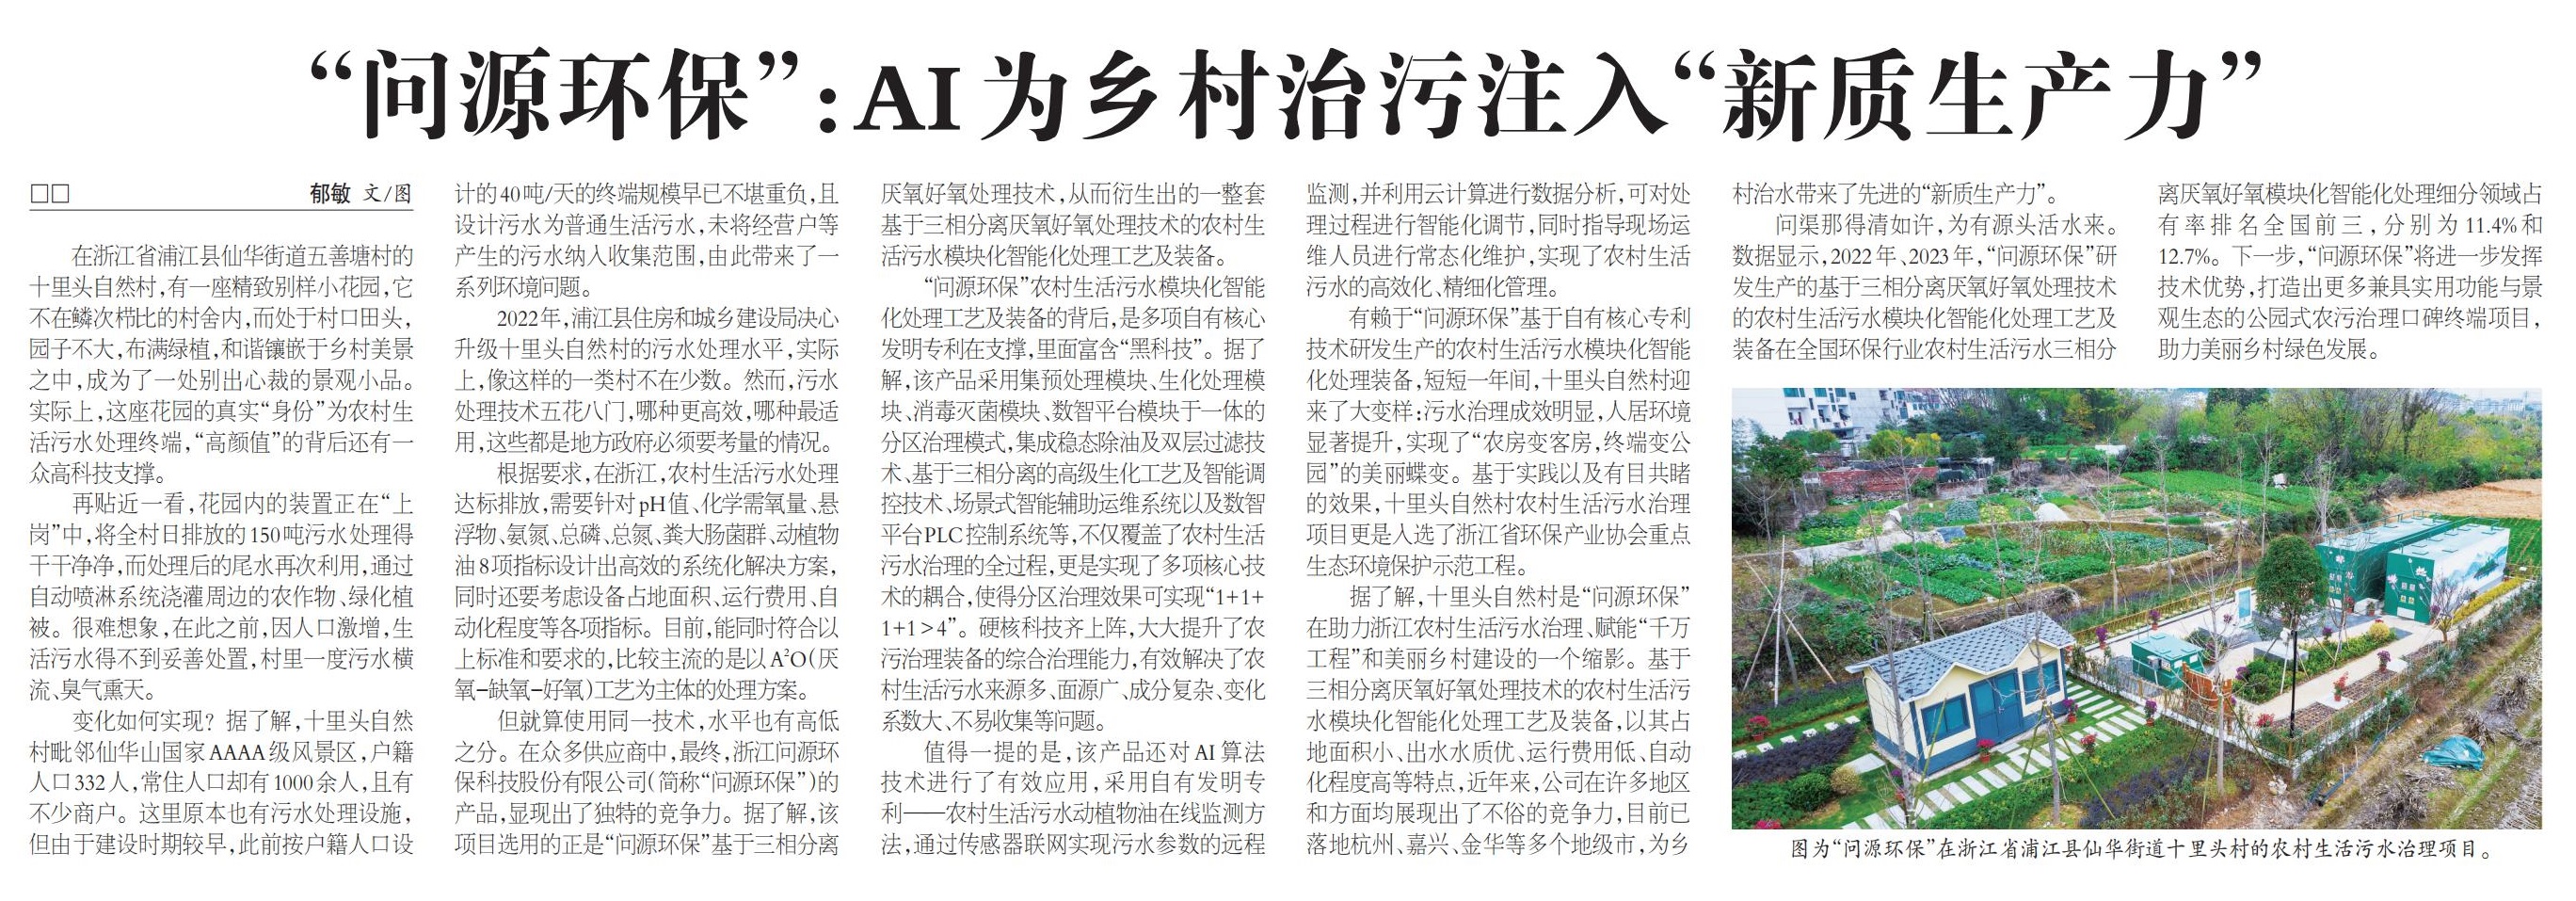  农民日报丨“金沙js9999777”：AI为乡村治污注入“新质生产力”